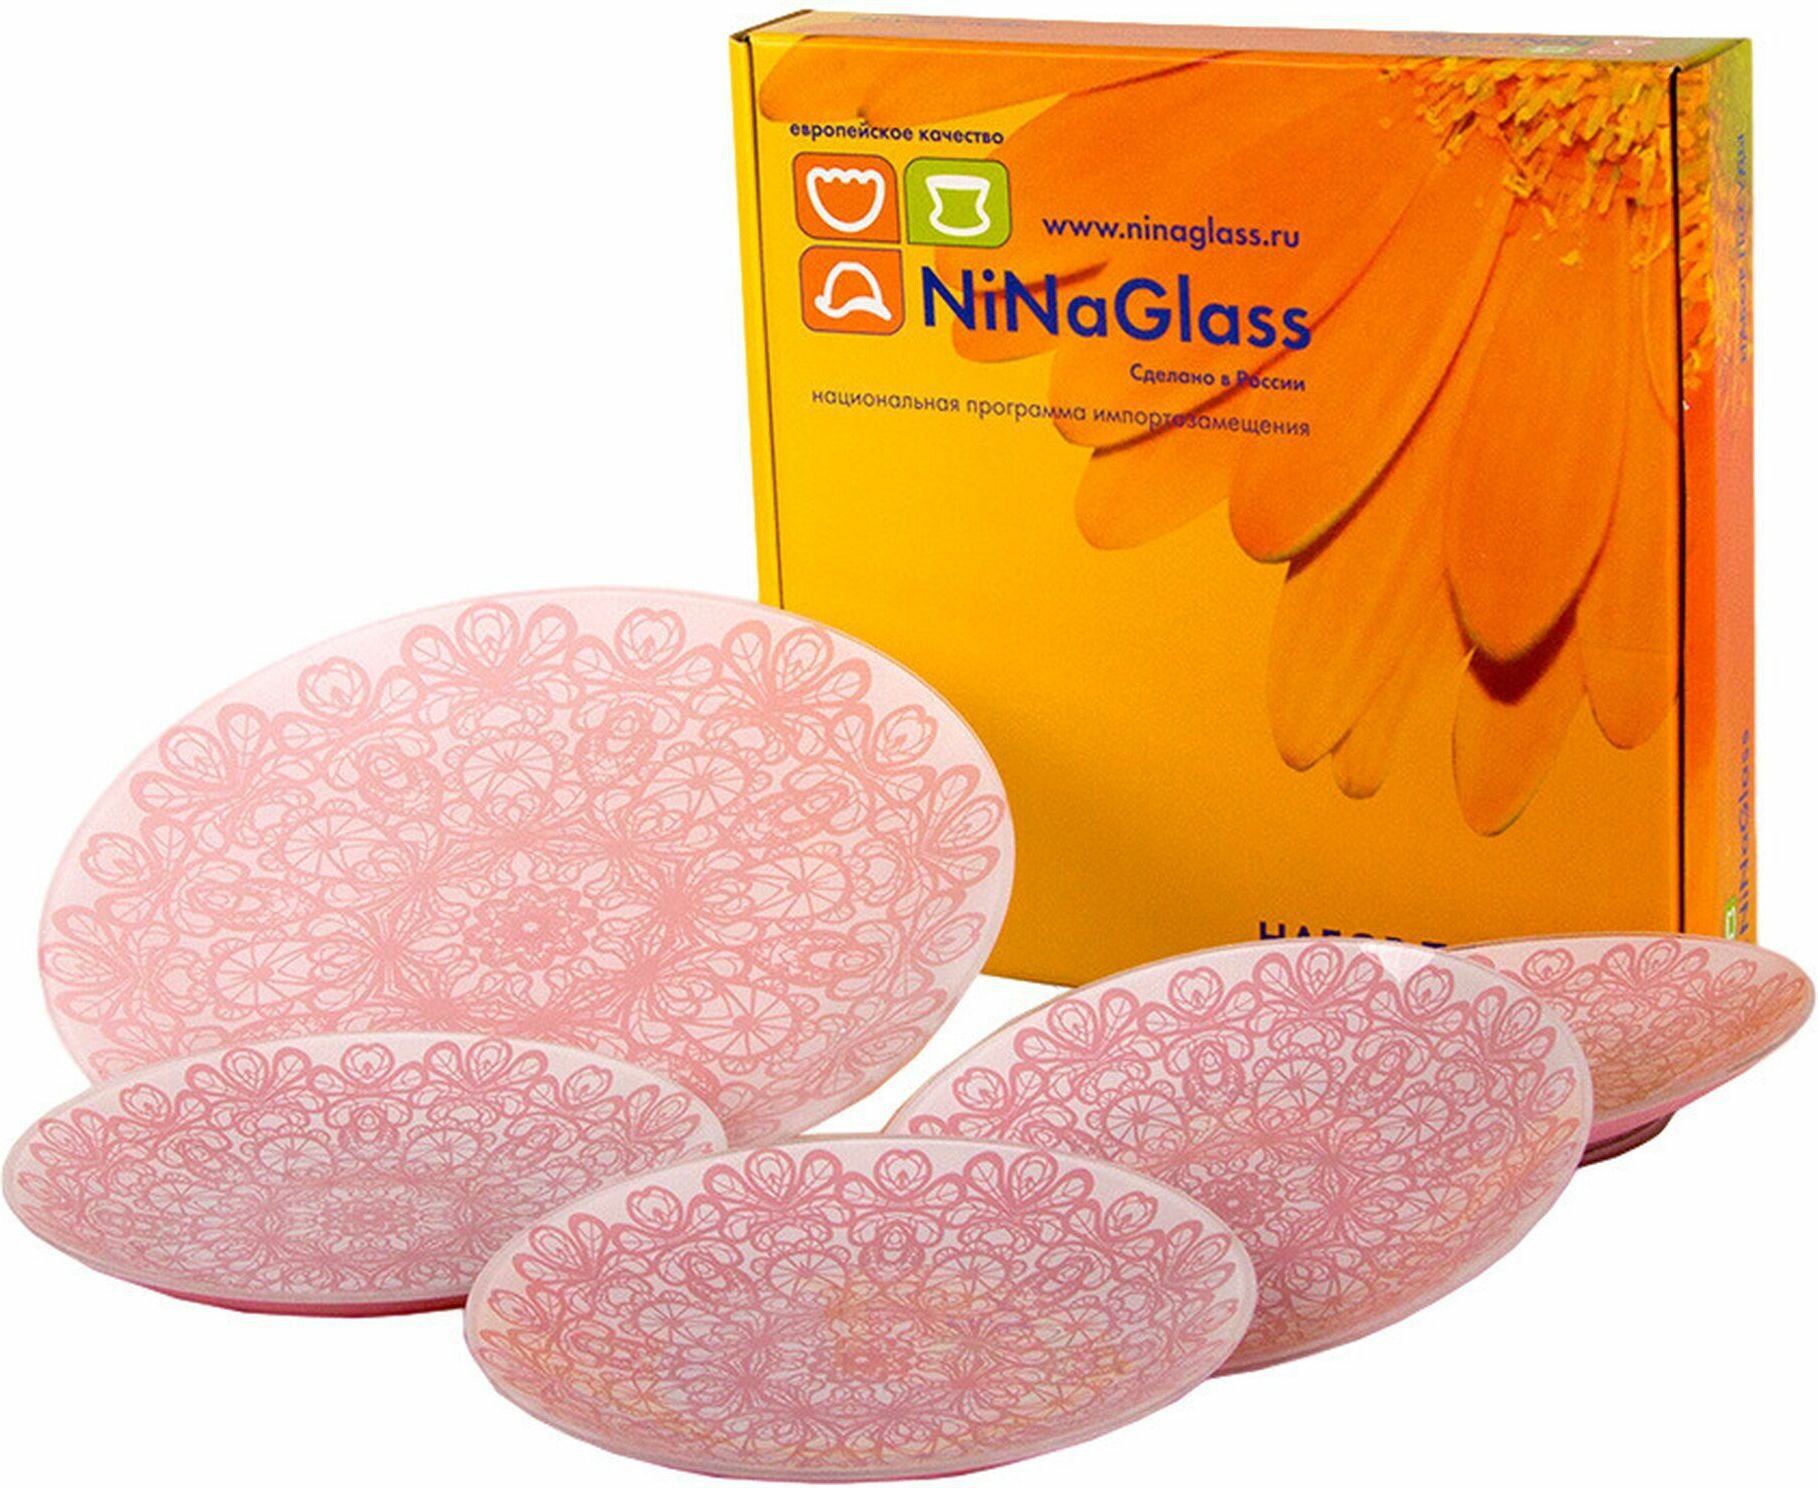 Набор тарелок обеденных NiNaGlass Кружево 20-30 см стекло розовый-белый 5 шт